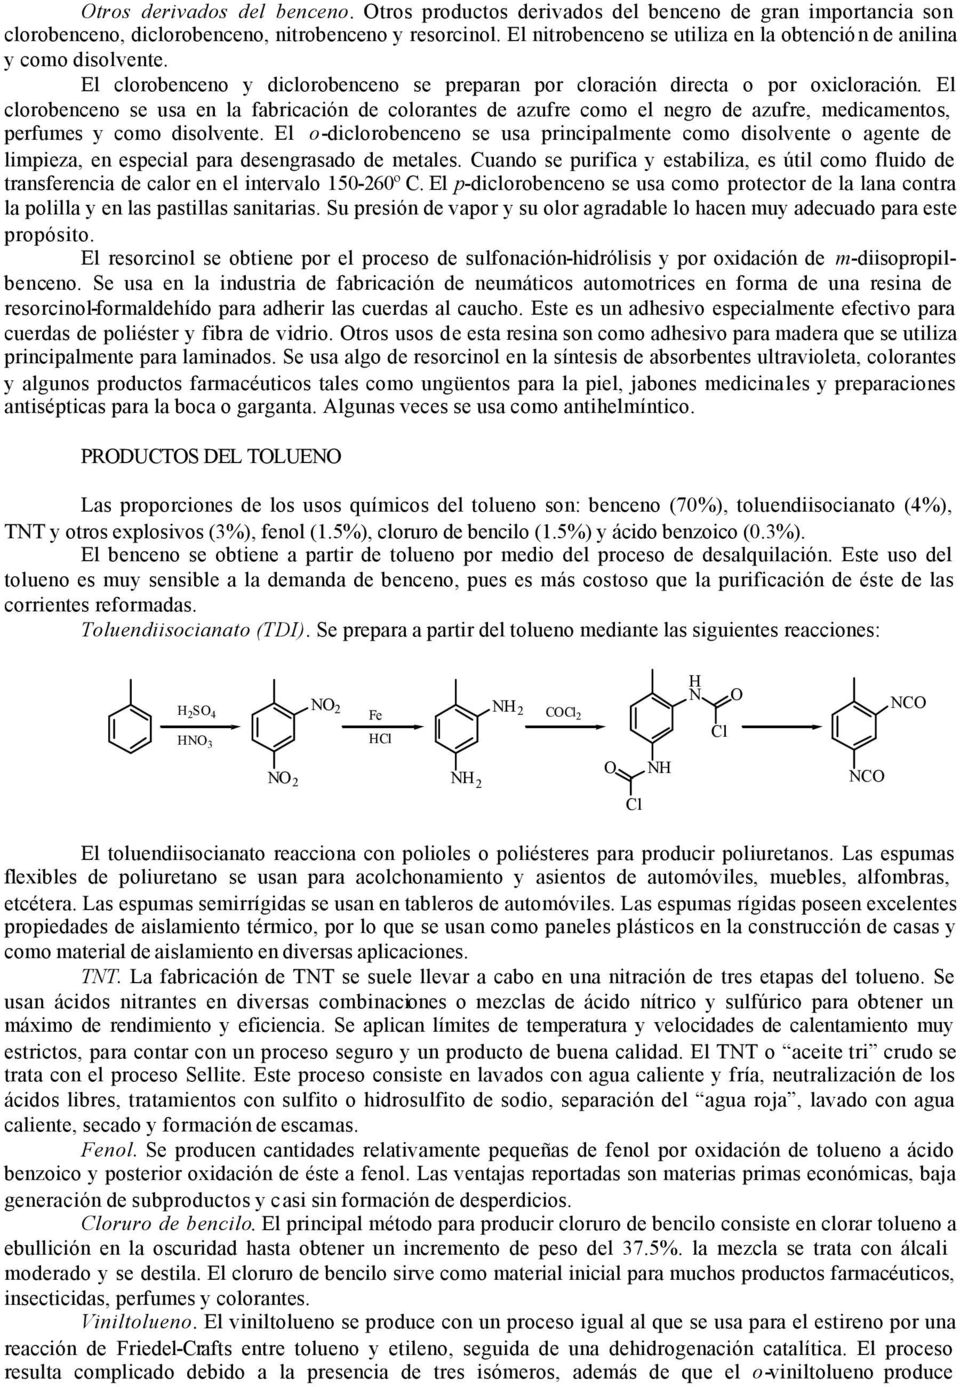 El clorobenceno se usa en la fabricación de colorantes de azufre como el negro de azufre, medicamentos, perfumes y como disolvente.